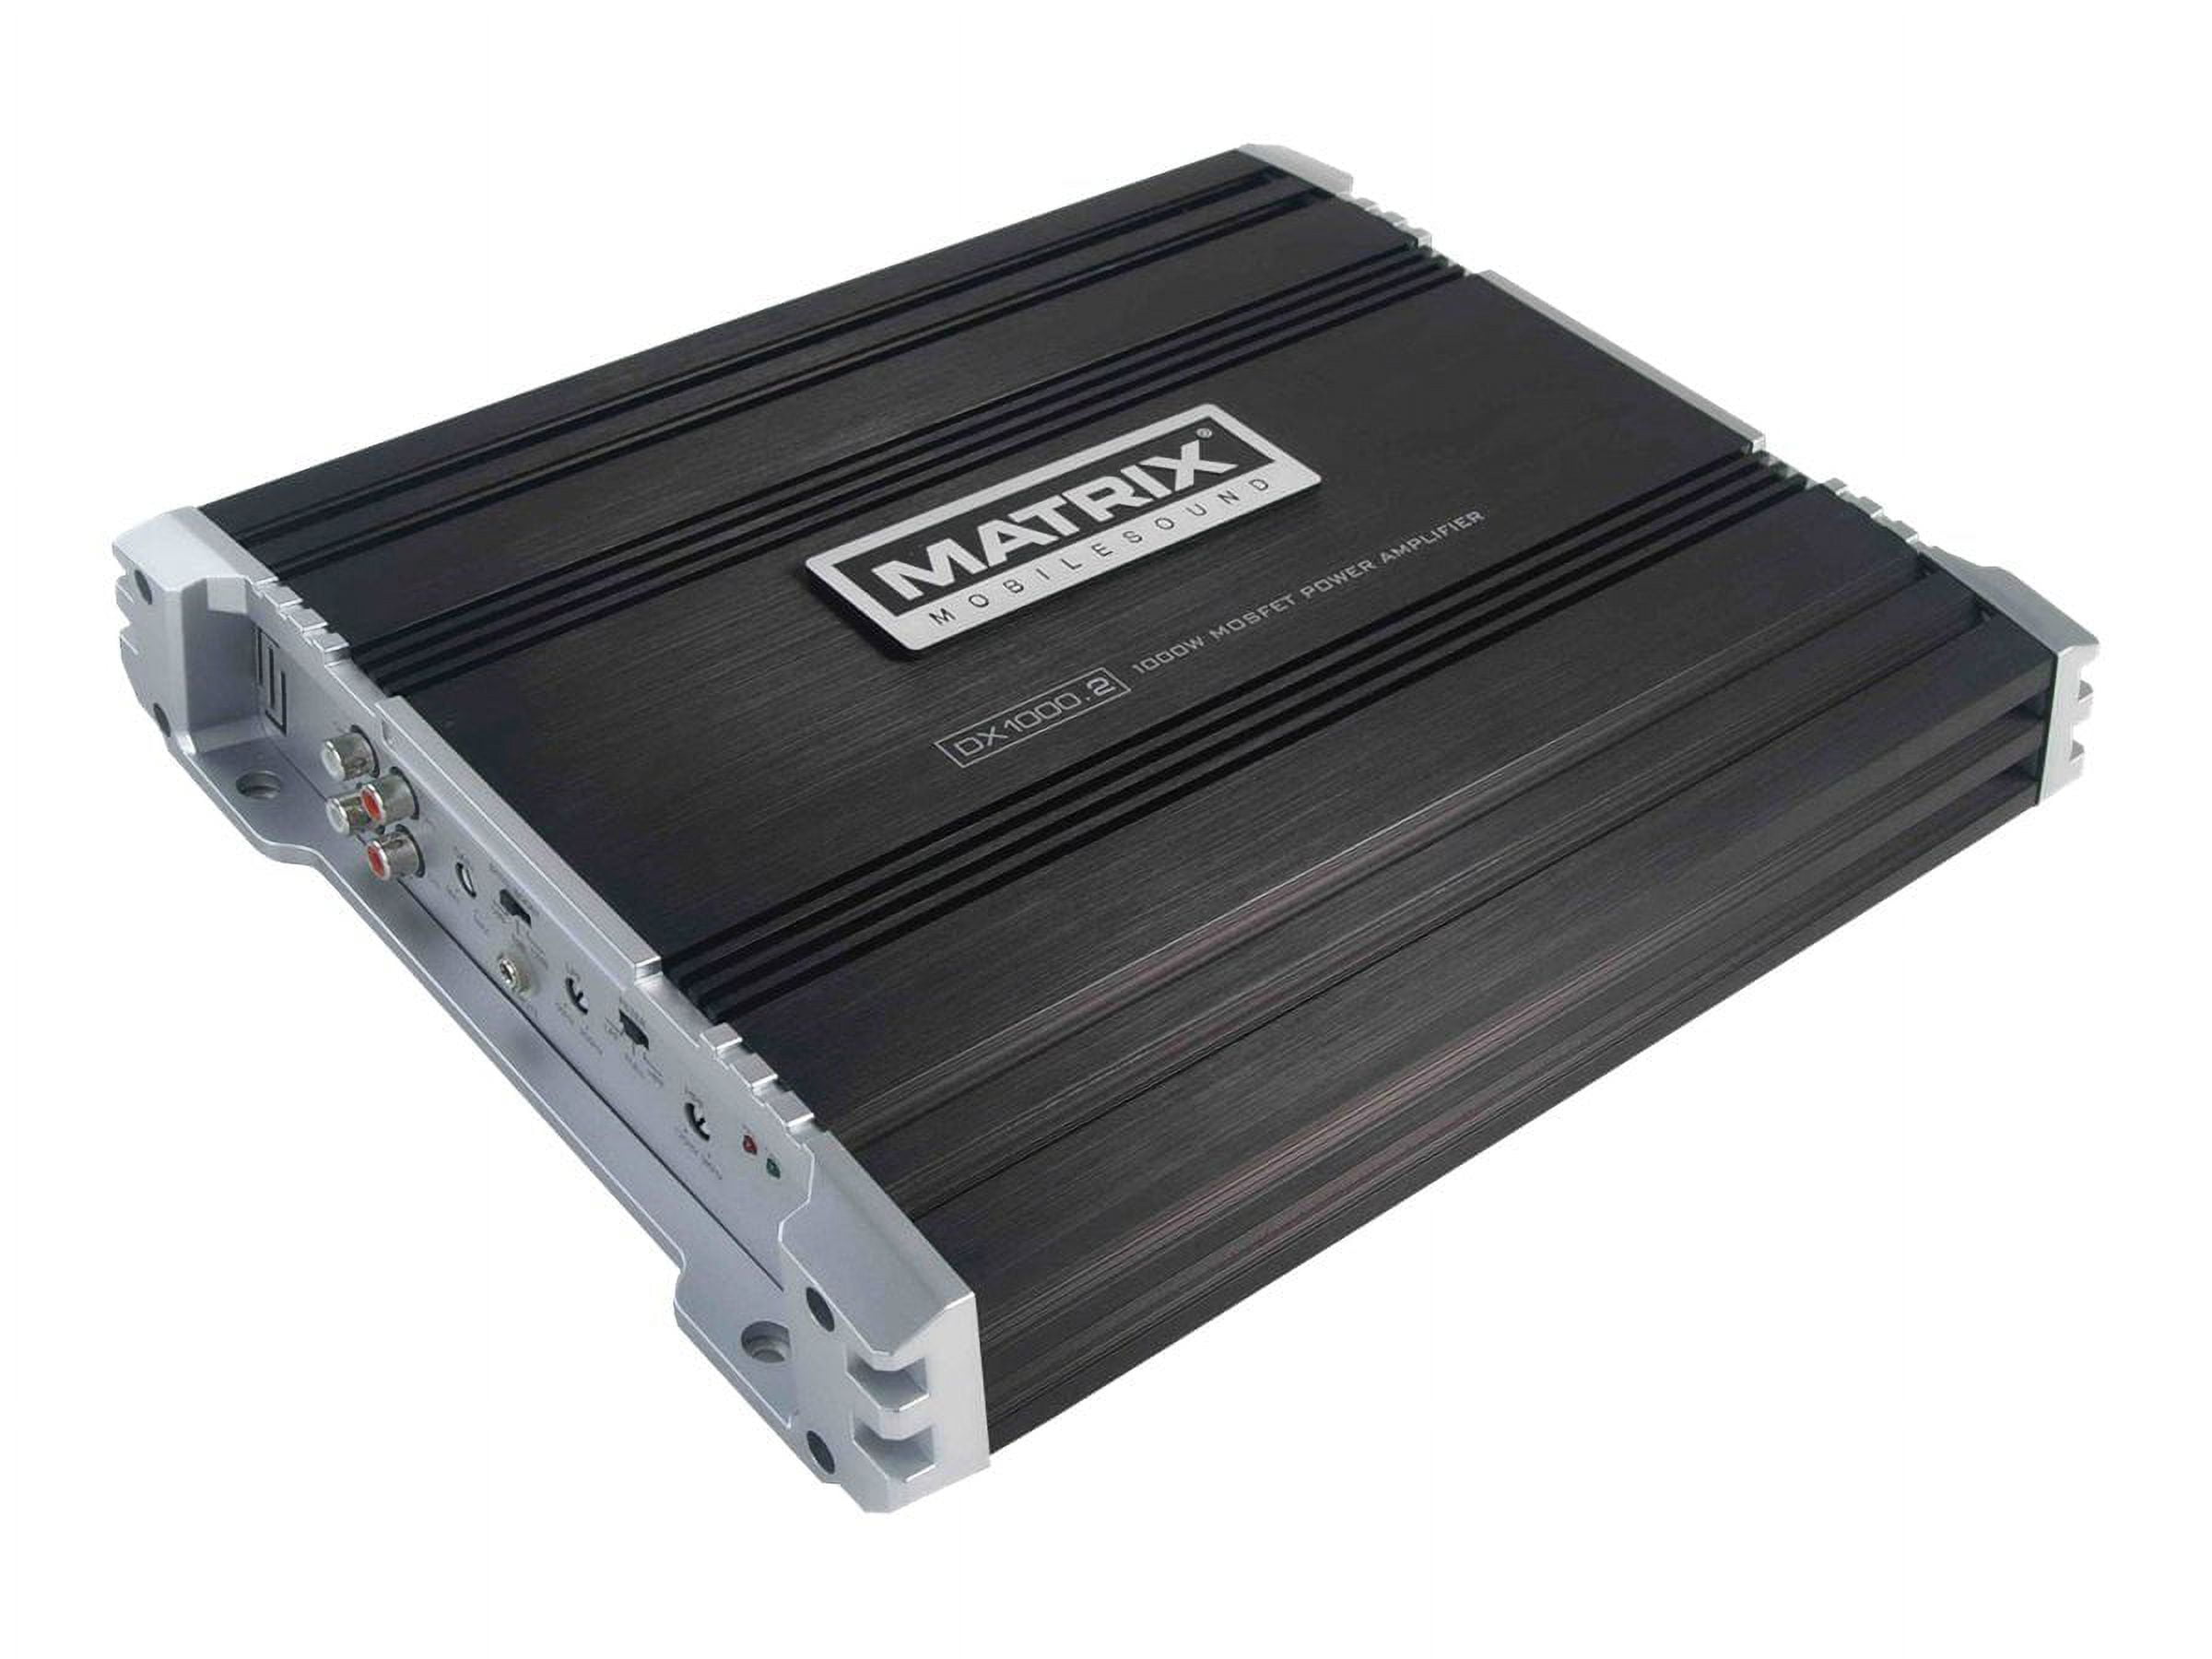 MAD1000 amplificador hifi estereo 2 x 50W - Tienda FonoMovil